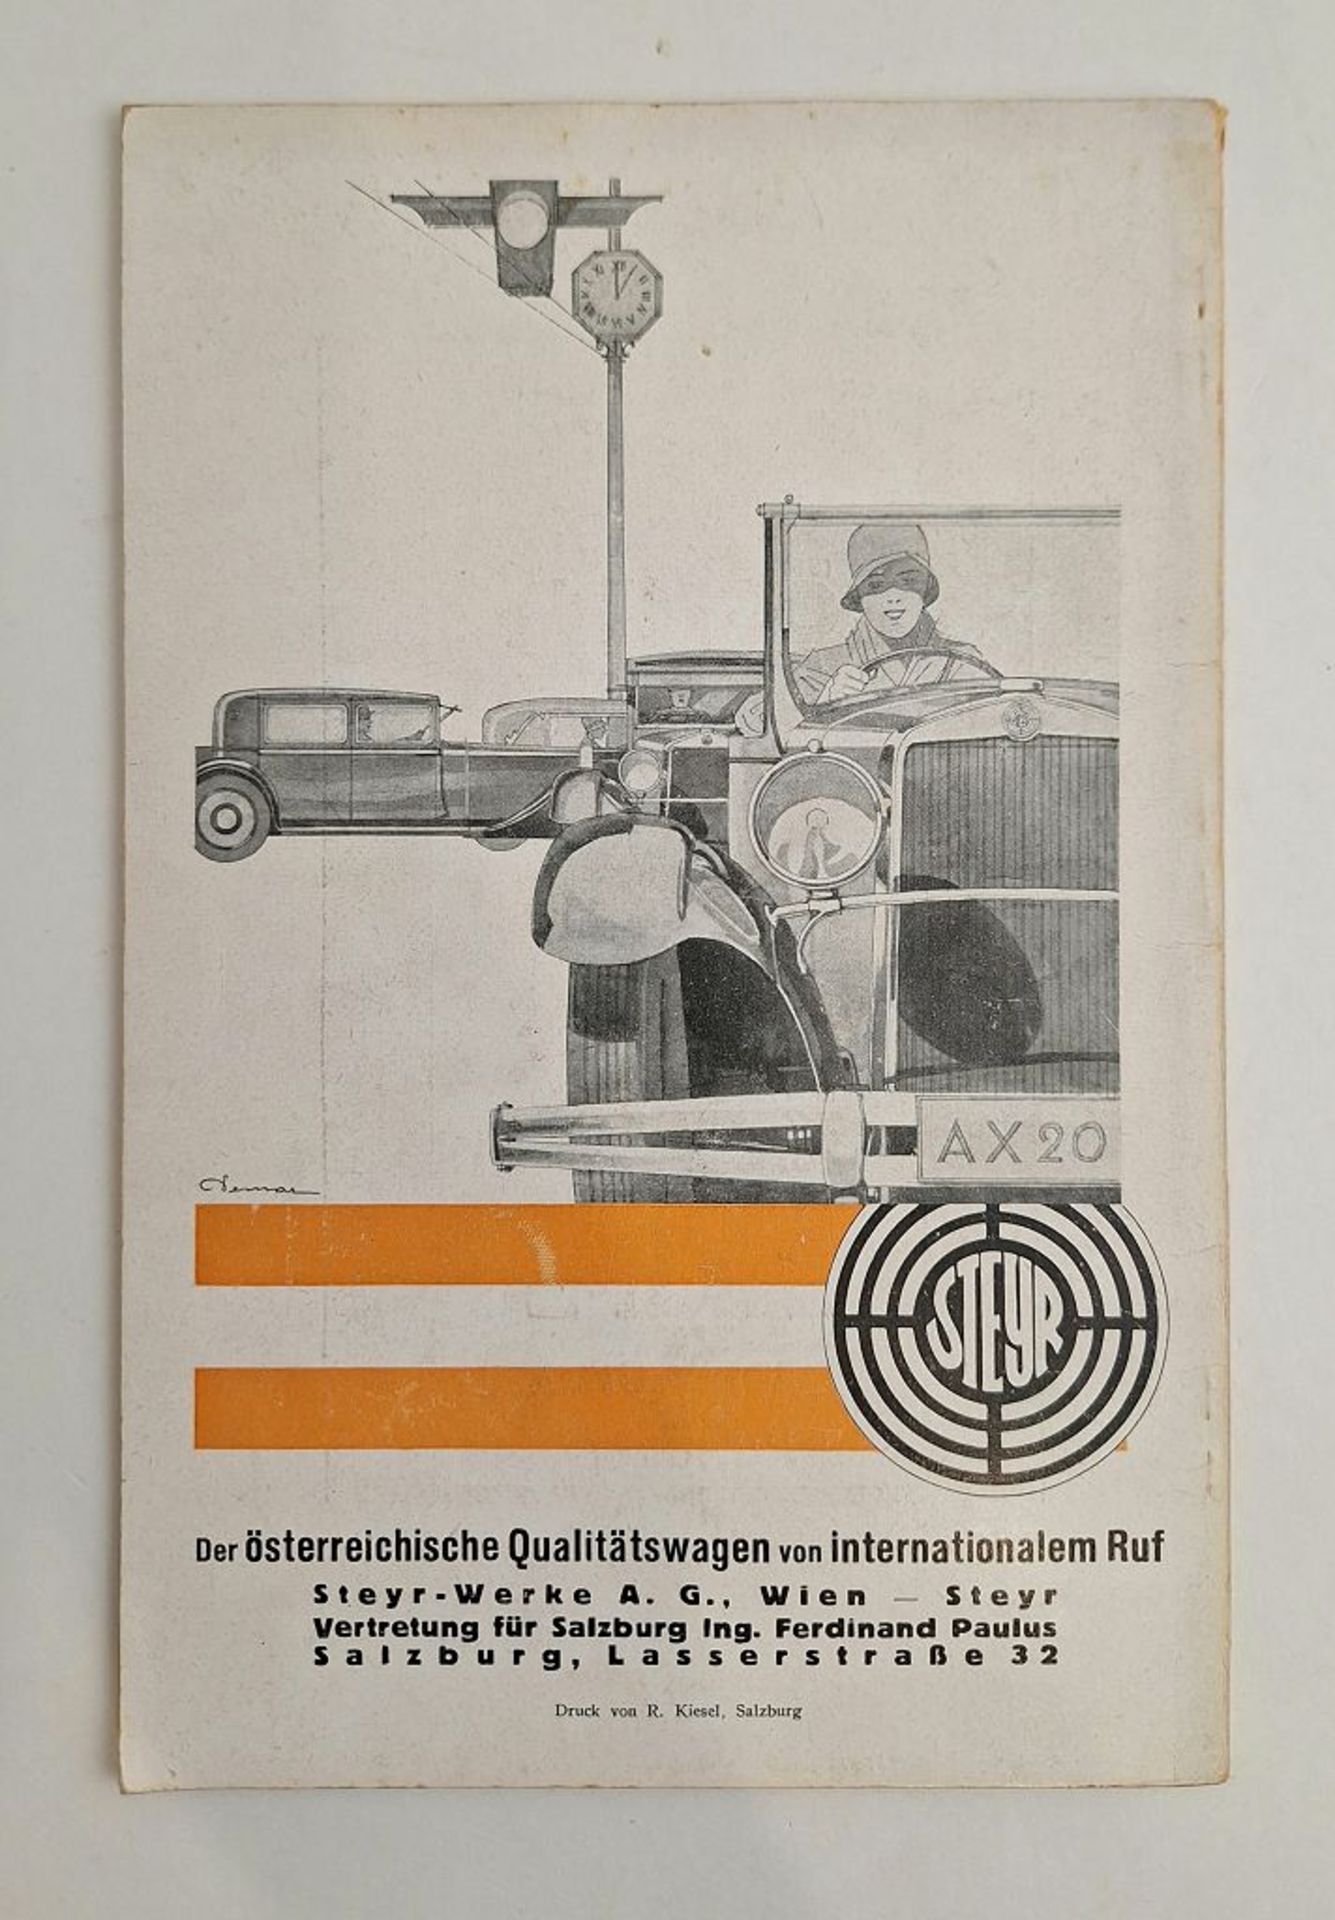 Programm und Führer der Salzburger Festspiele 1929 - Image 4 of 4